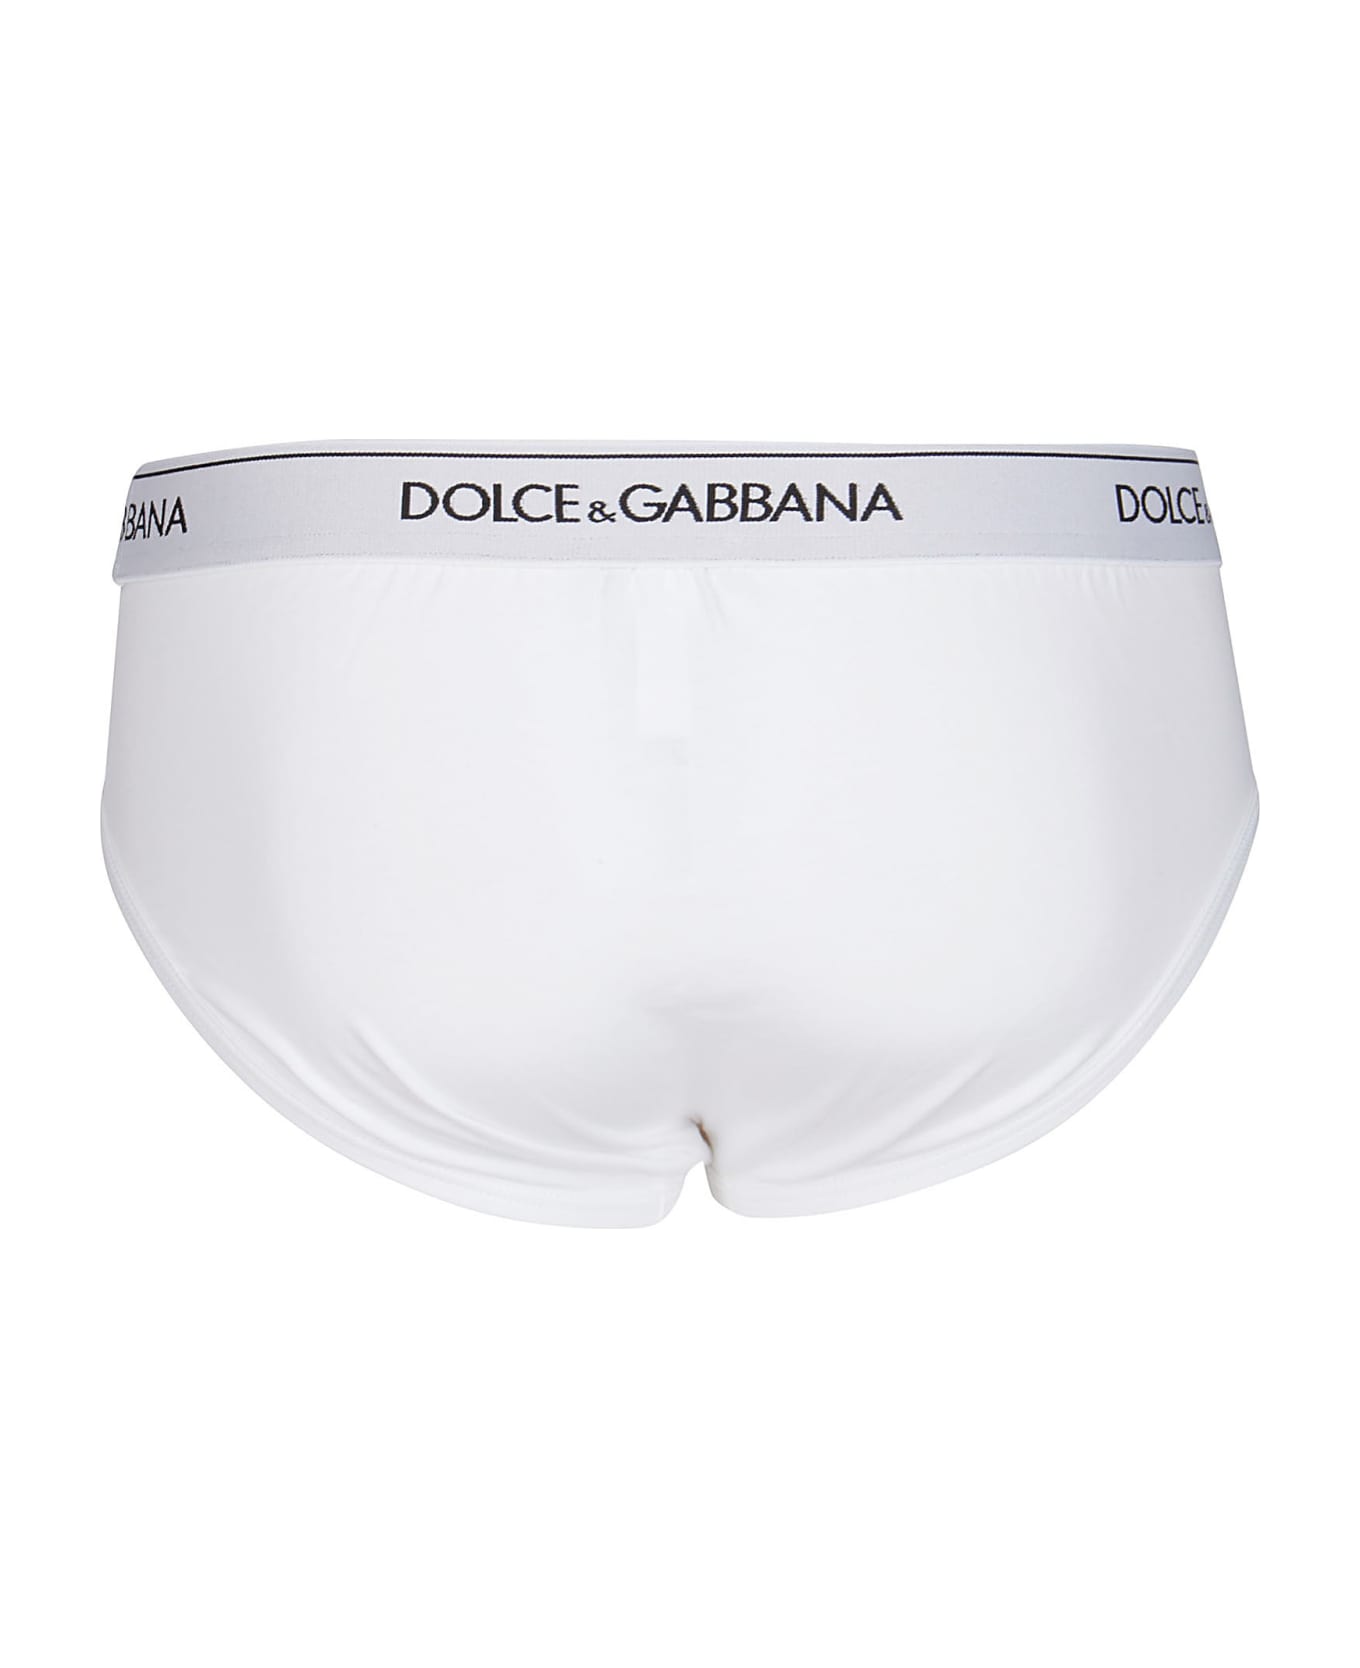 Dolce & Gabbana White Cotton Briefs